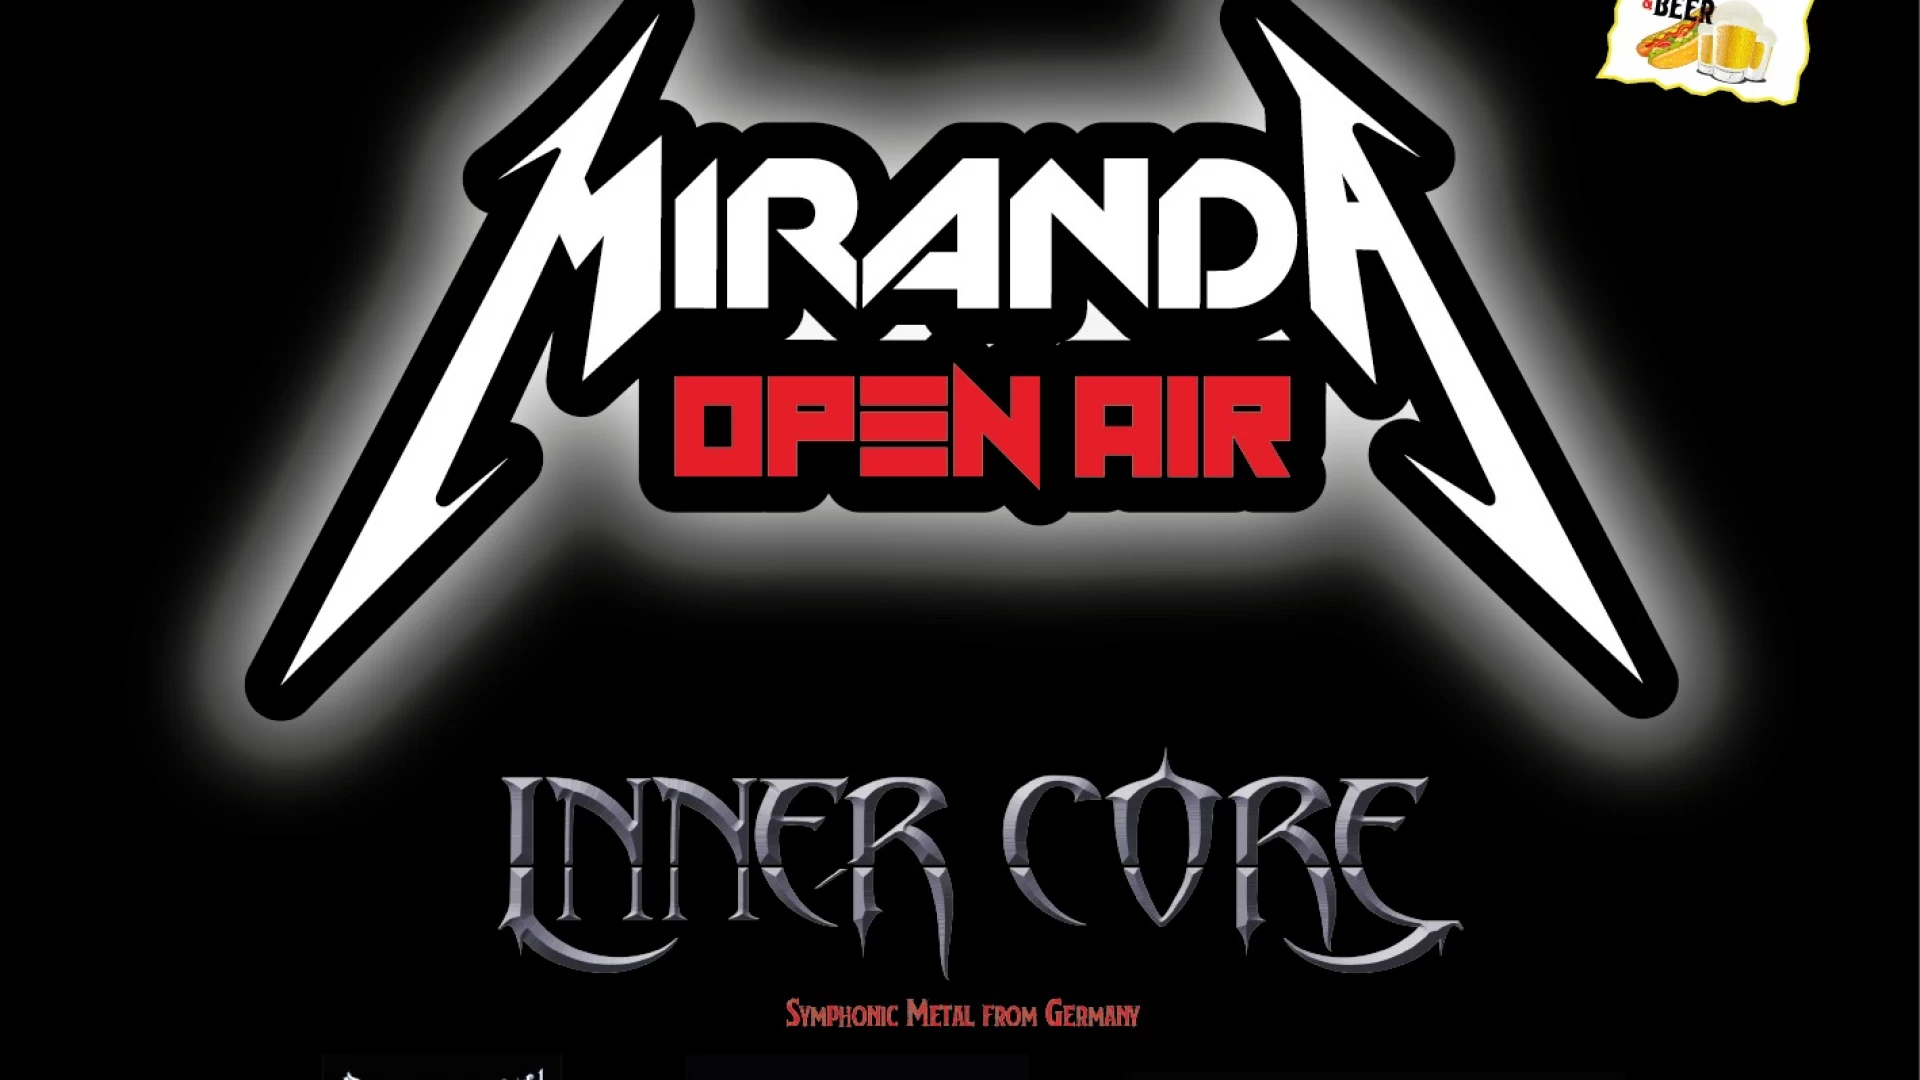 Miranda Open Air, il 7 agosto presso l’Anfiteatro comunale il festival Heavy Metal unico in tutto il Molise.